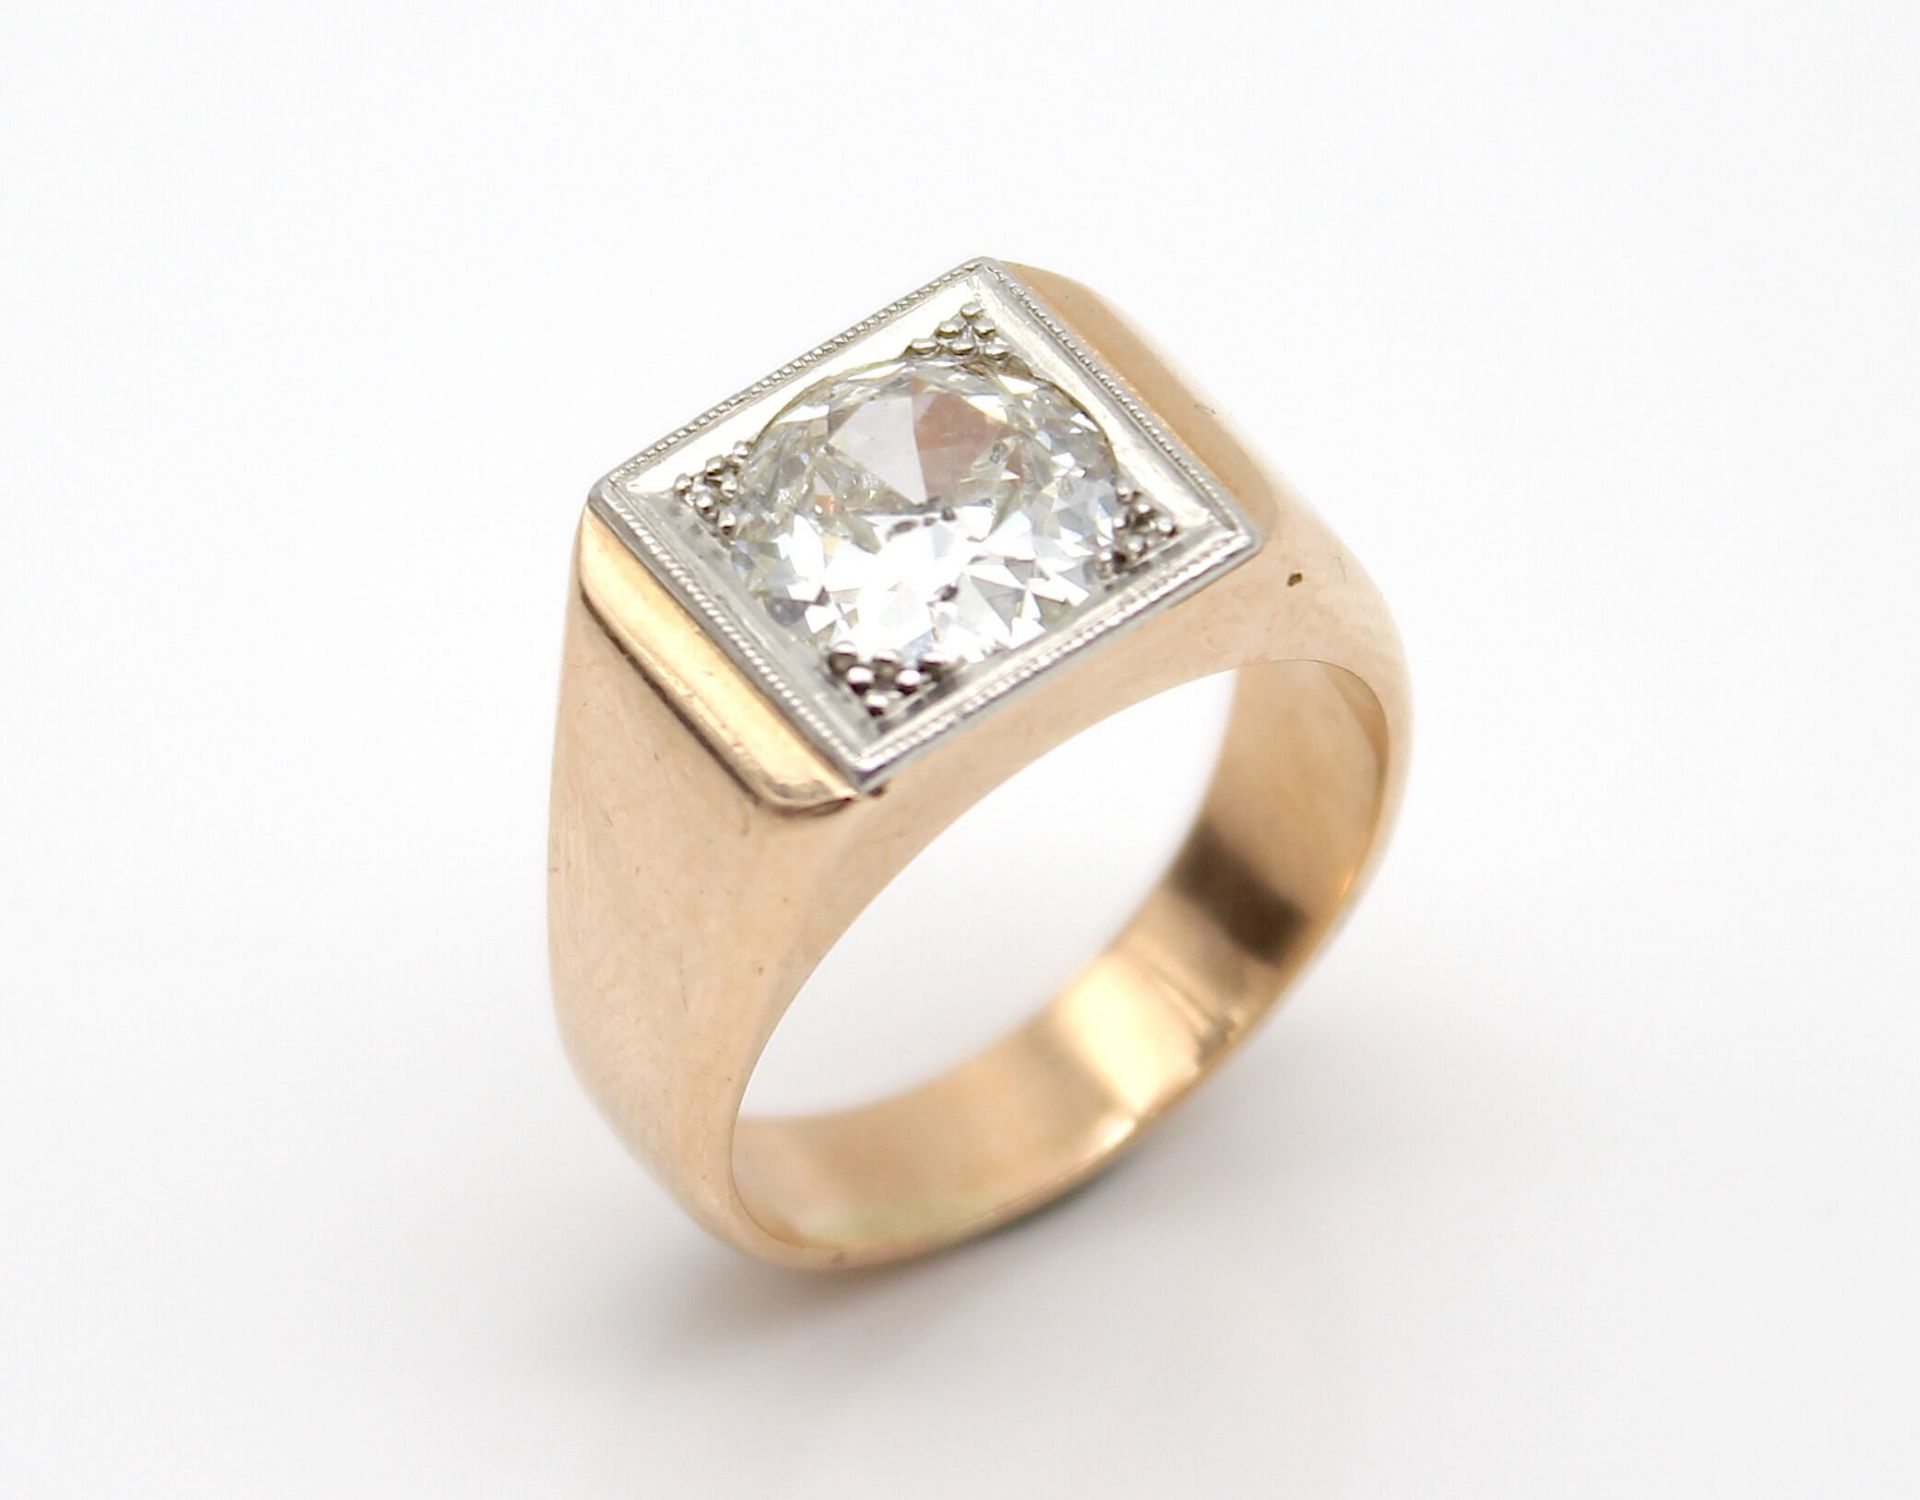 Ring aus 585er Gold mit Platin mit einem Brillanten, ca. 2 ct, P1, Farbe I - J. Gewicht: 11,2 g,